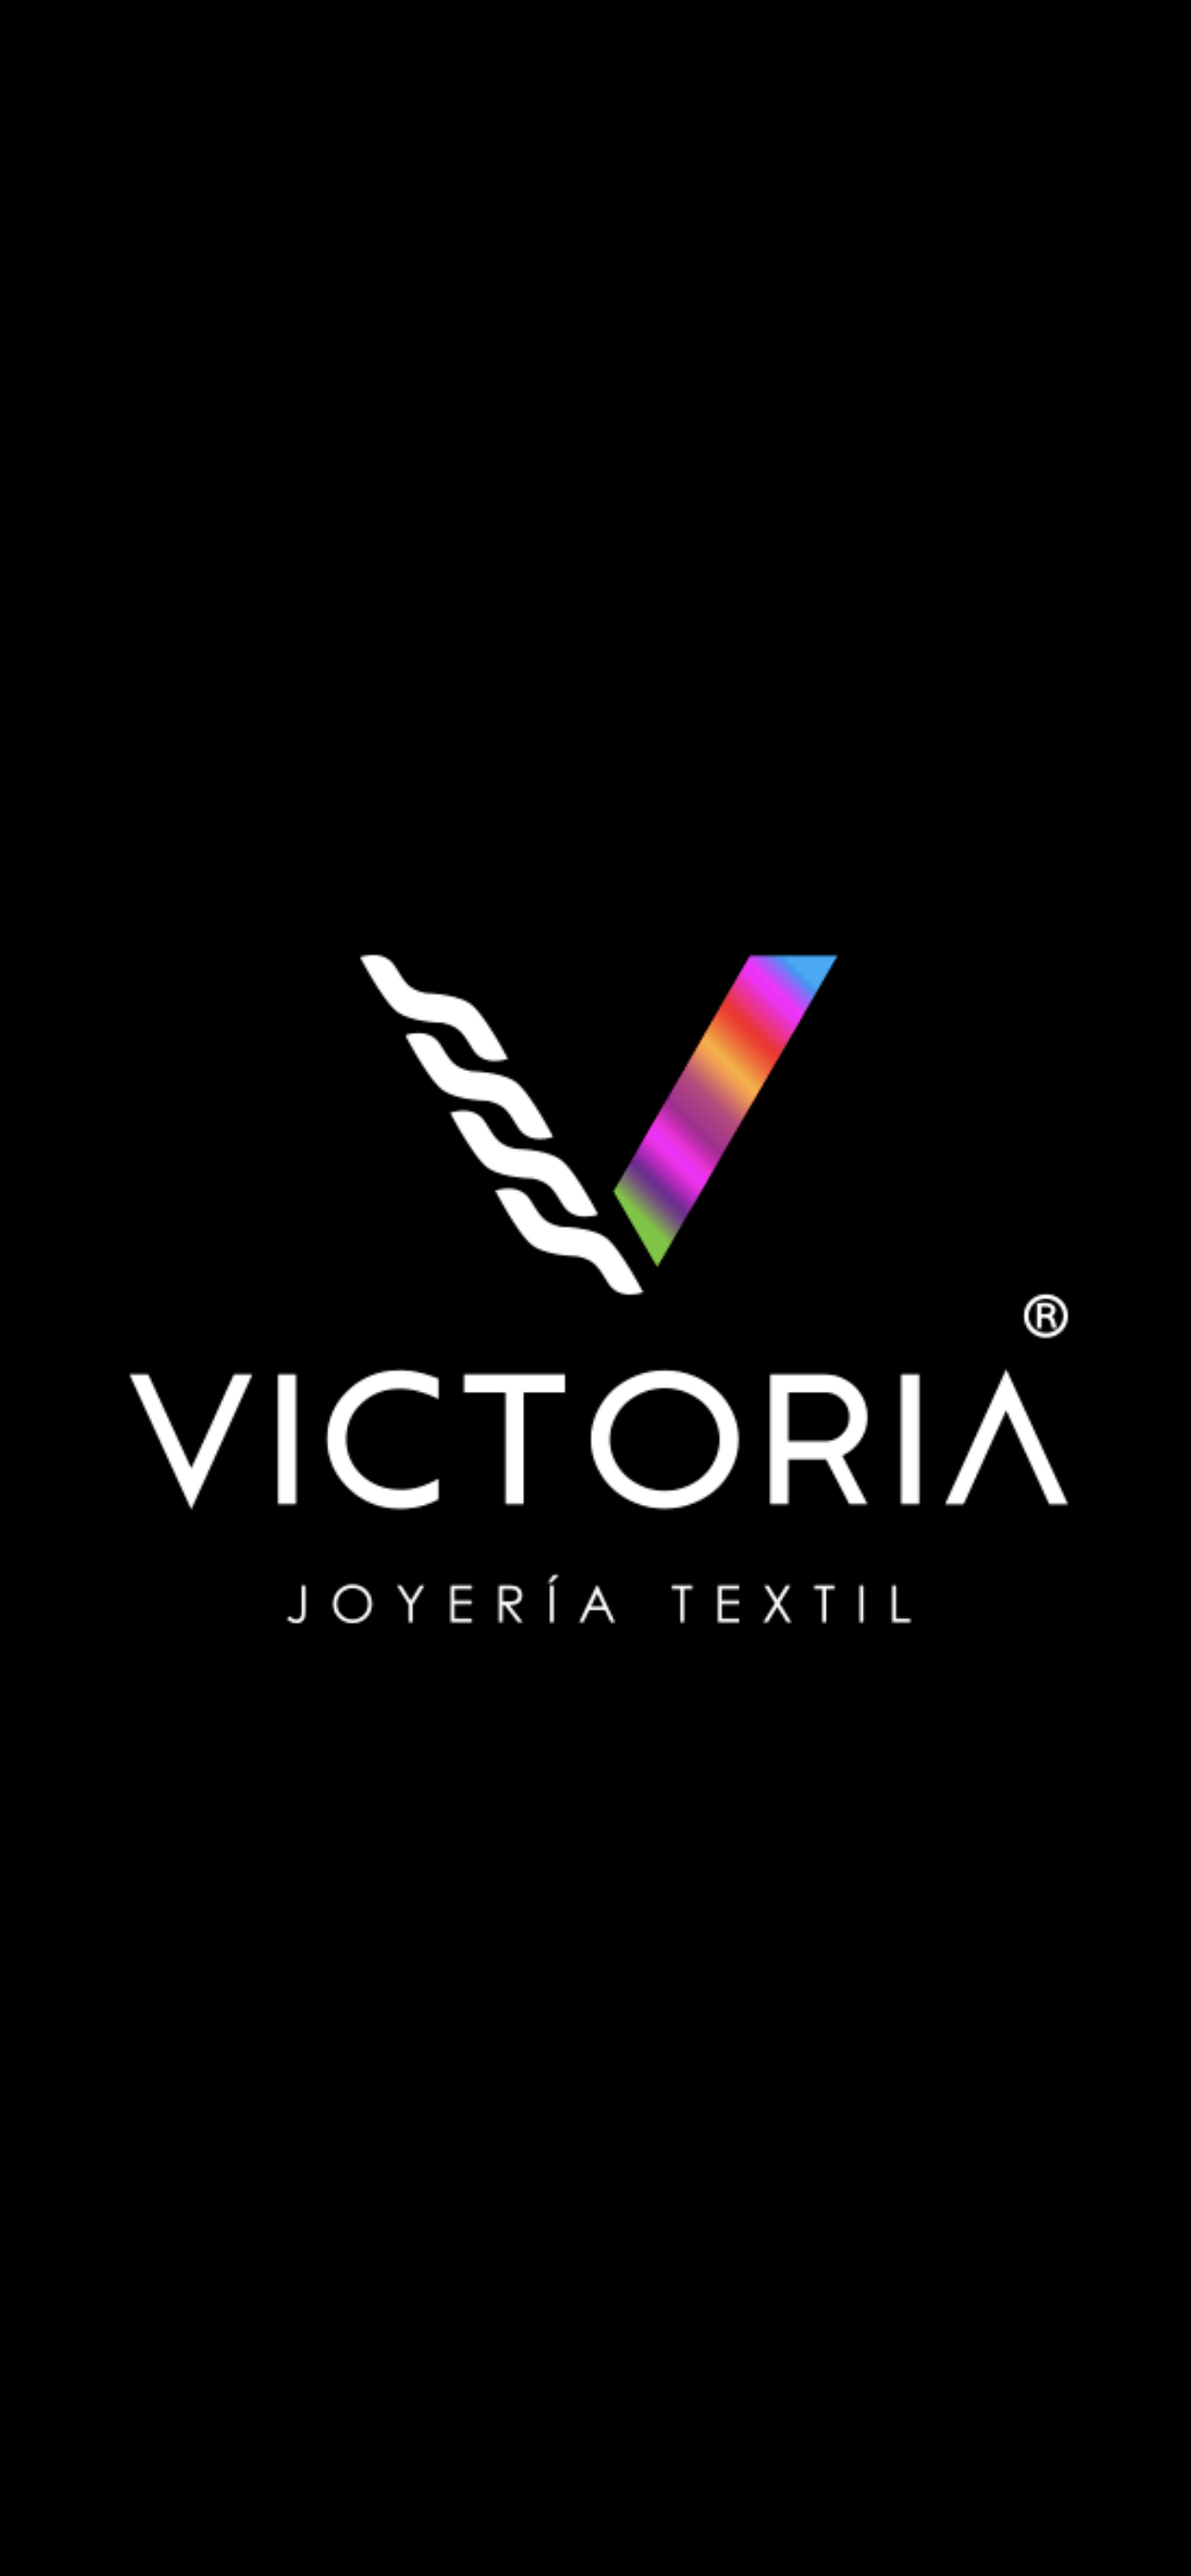 Victoria joyería textil 